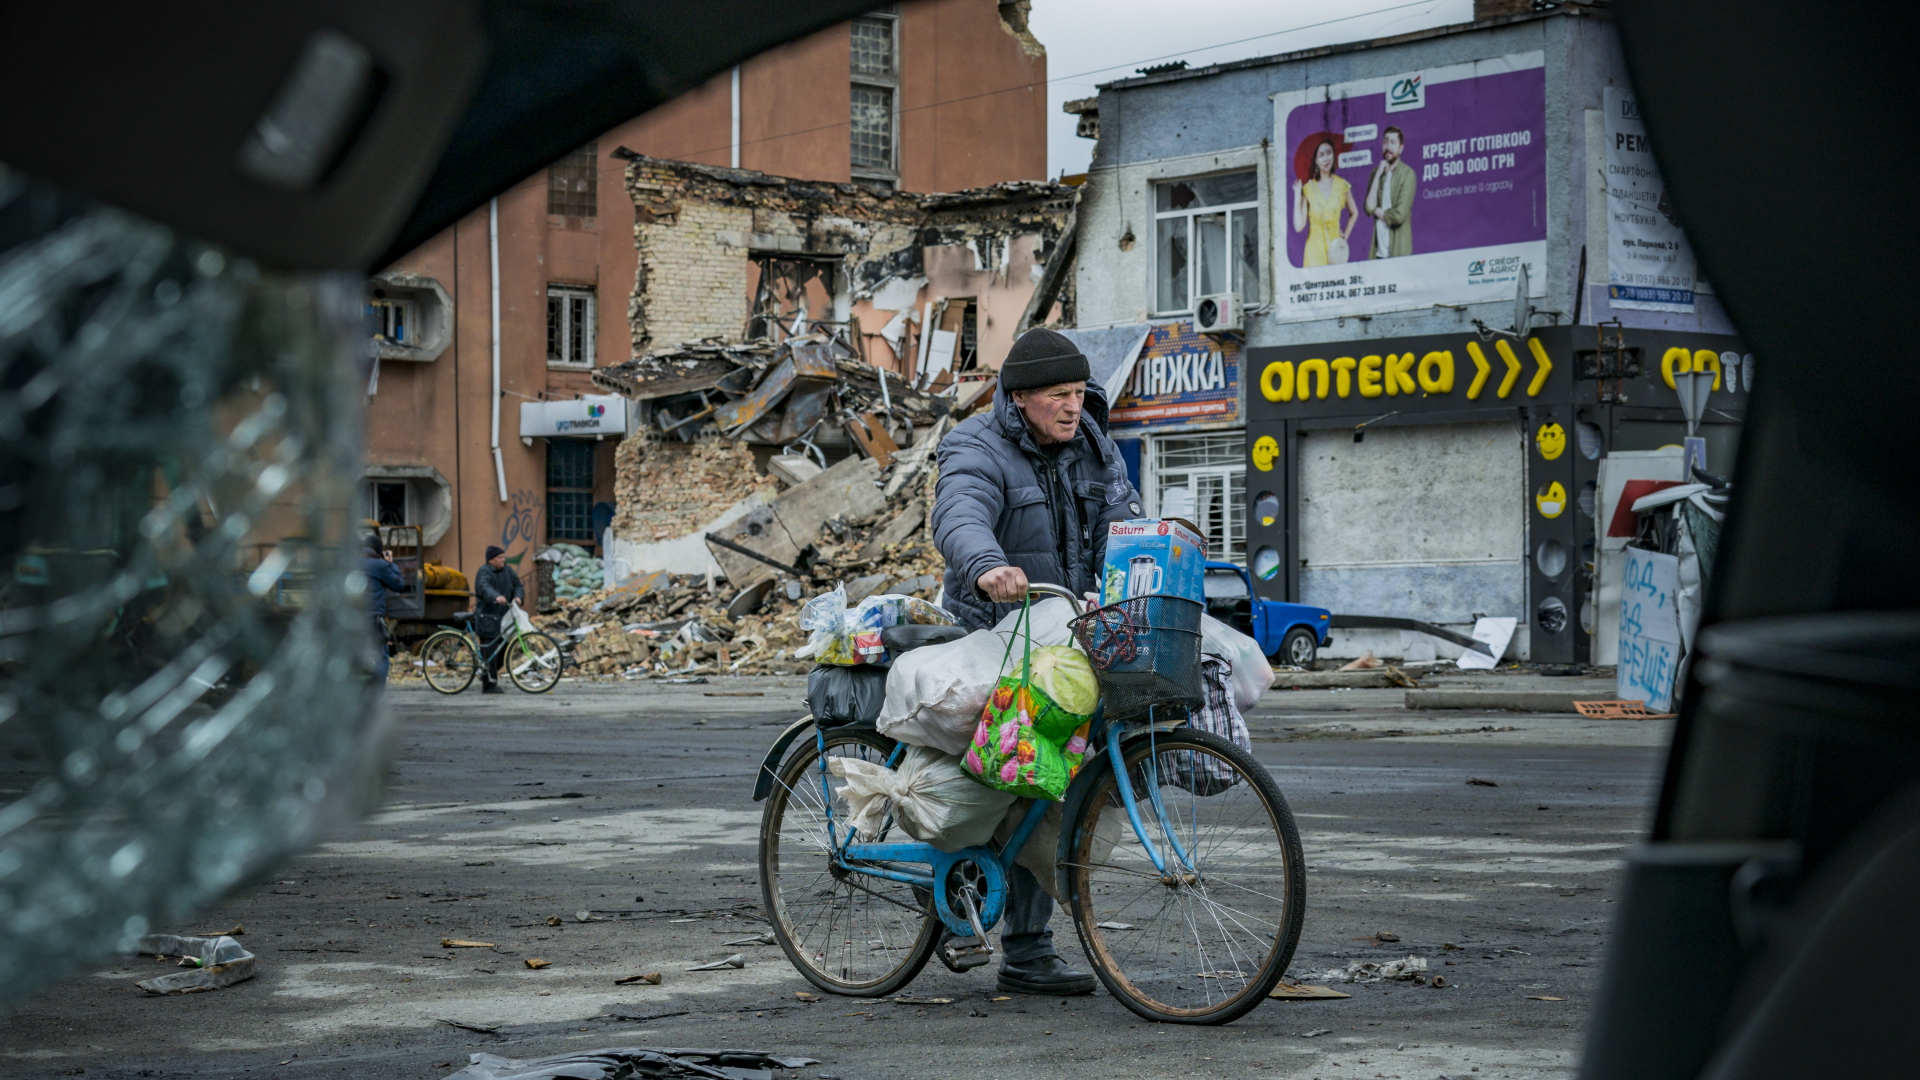  Ein Mann nimmt seine Habseligkeiten auf einem Fahrrad mit, nachdem er sein Haus während der Kämpfe zwischen der russischen und ukrainischen Armee in Borodianka verloren hat.  | dpa